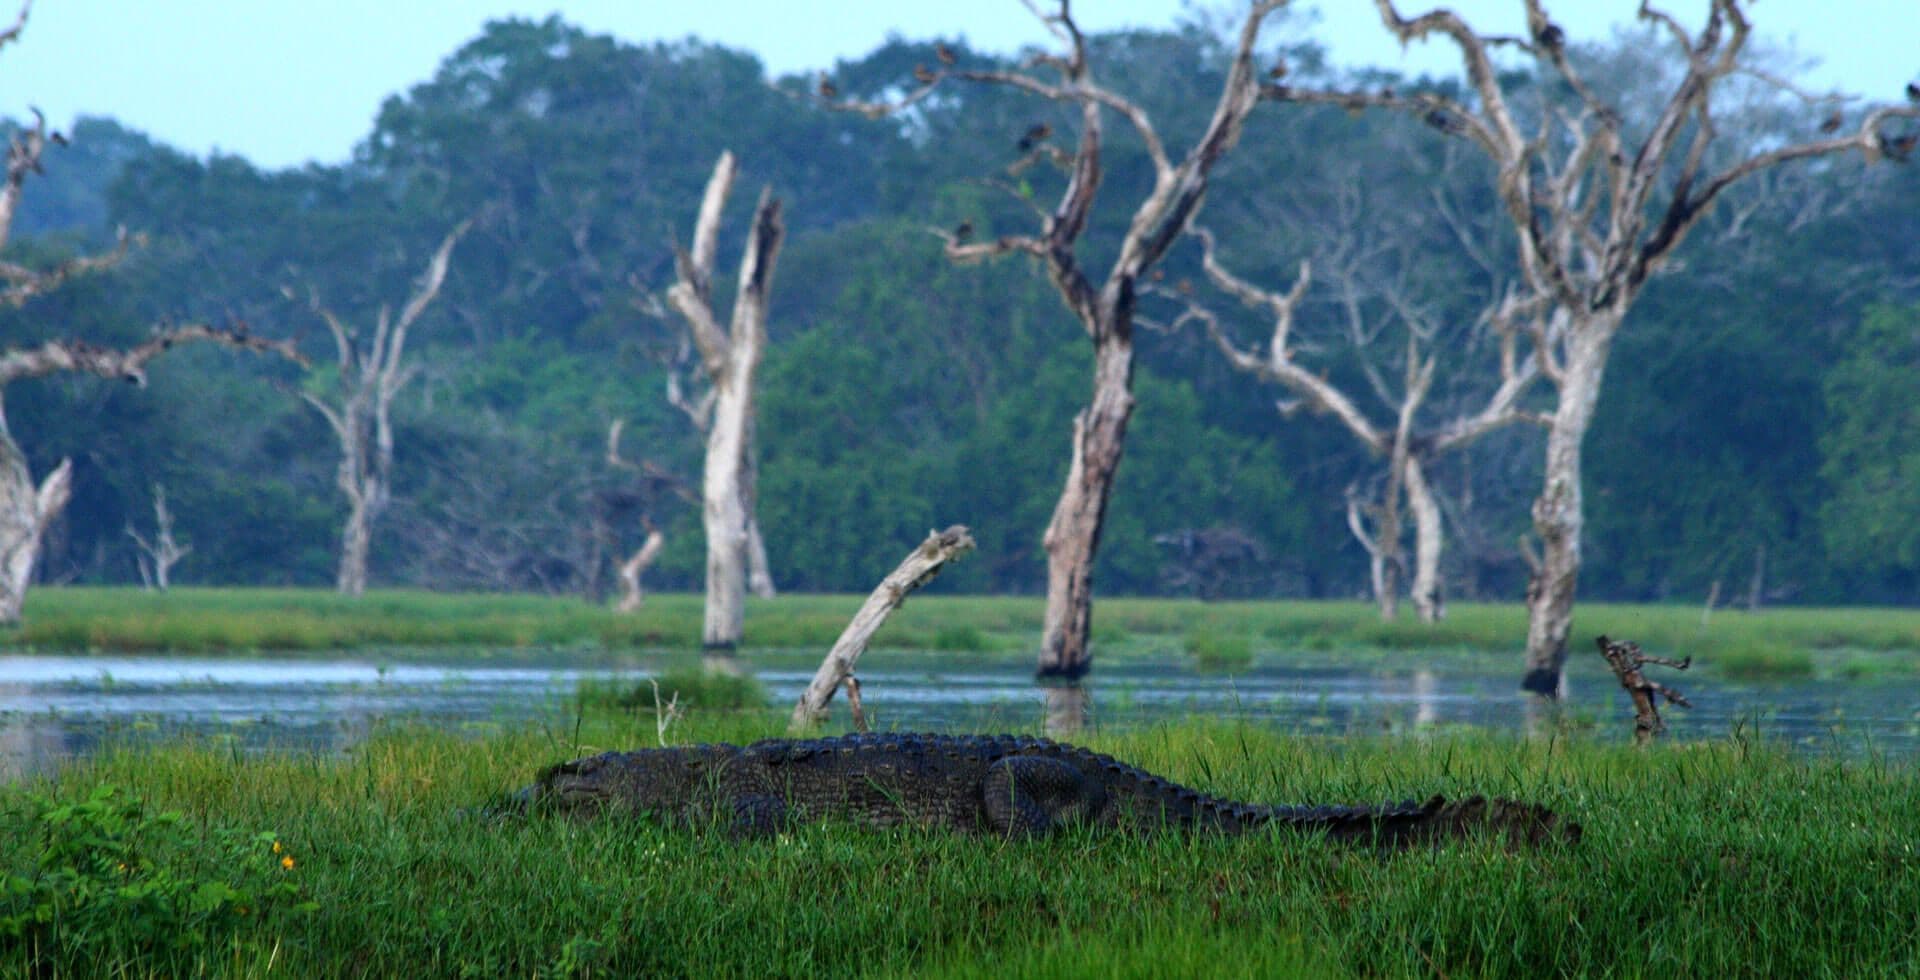 تمساح سارق يبحث عن فريسته بالقرب من البحيرة الصغيرة في حديقة يالا الوطنية ، سريلانكا.